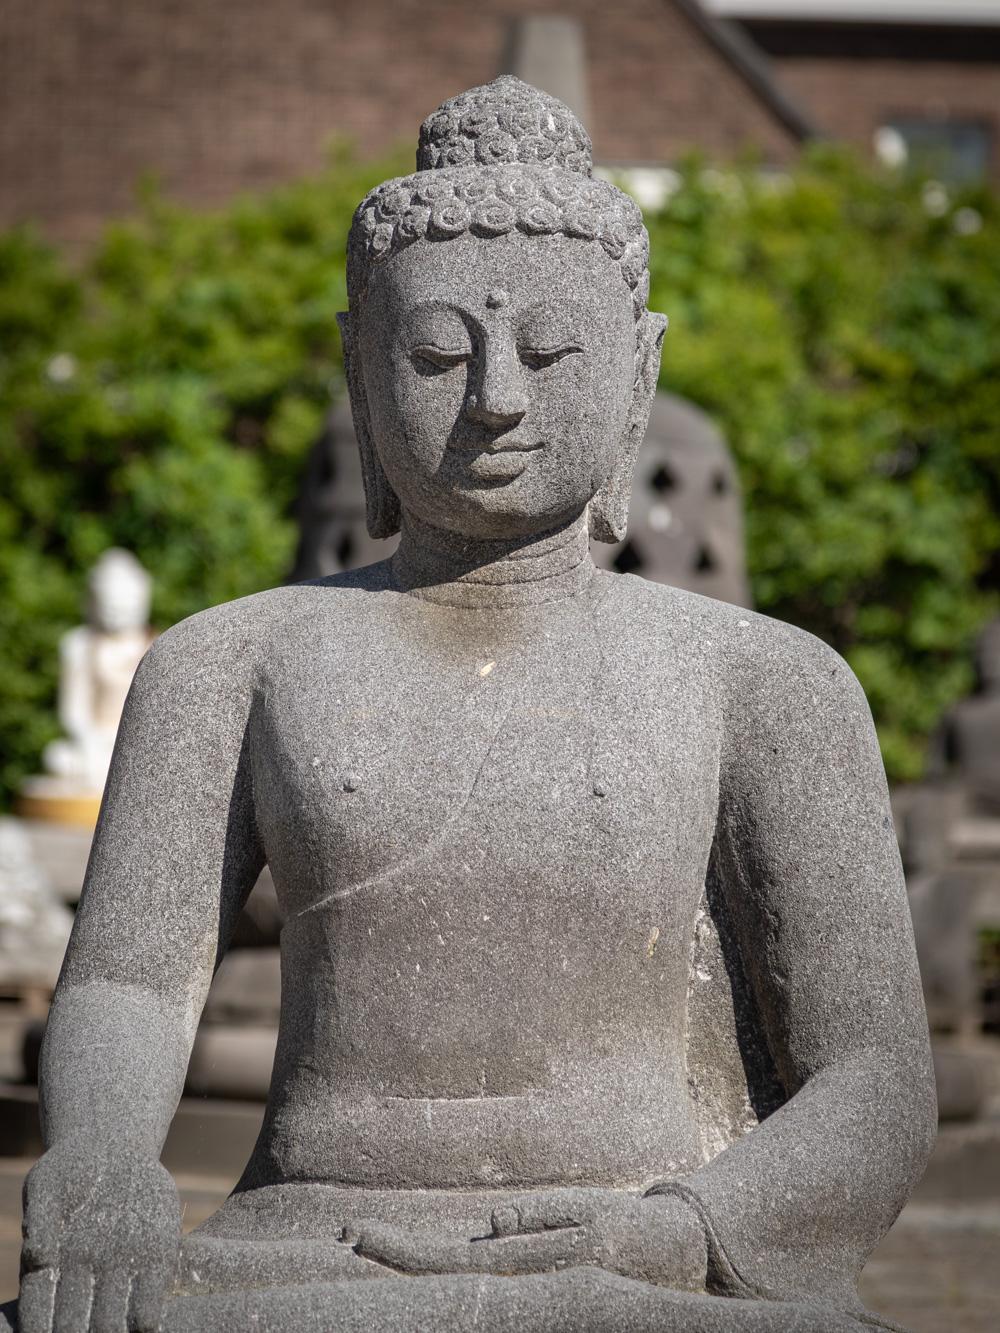 La grande statue de Bouddha en lavastone d'Indonésie est un remarquable témoignage de l'habileté artistique et de la représentation spirituelle. Sculptée à la main dans un seul bloc de lavastone, cette statue atteint une hauteur impressionnante de